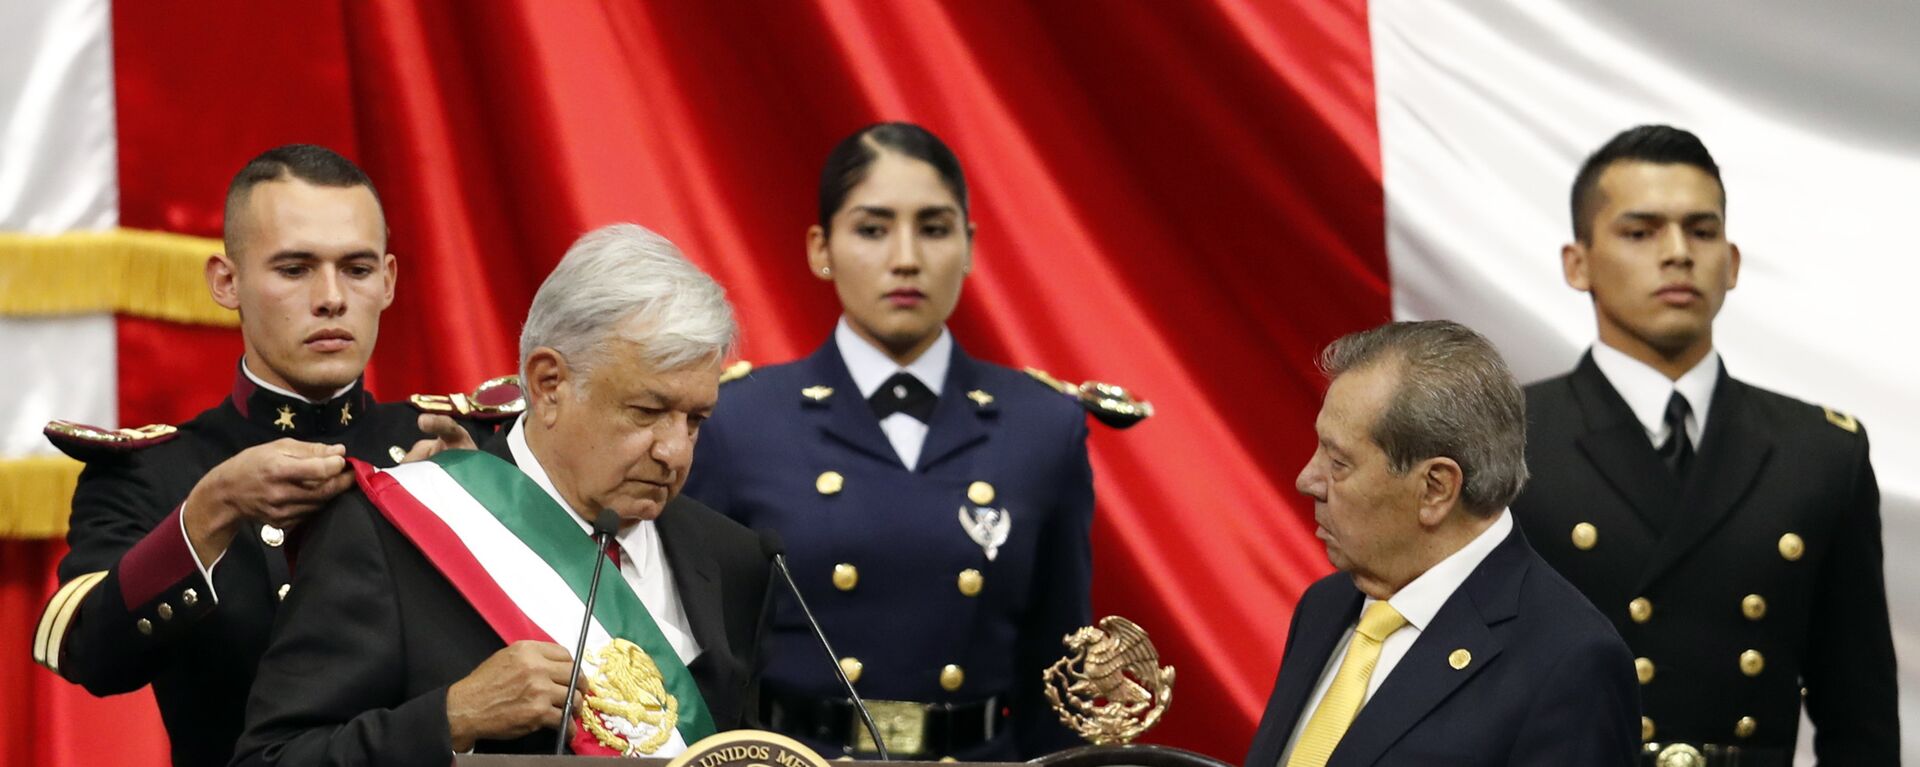 Andrés Manuel López Obrador toma posesión como presidente de México, 1 de diciembre de 2018 - Sputnik Mundo, 1920, 05.03.2021